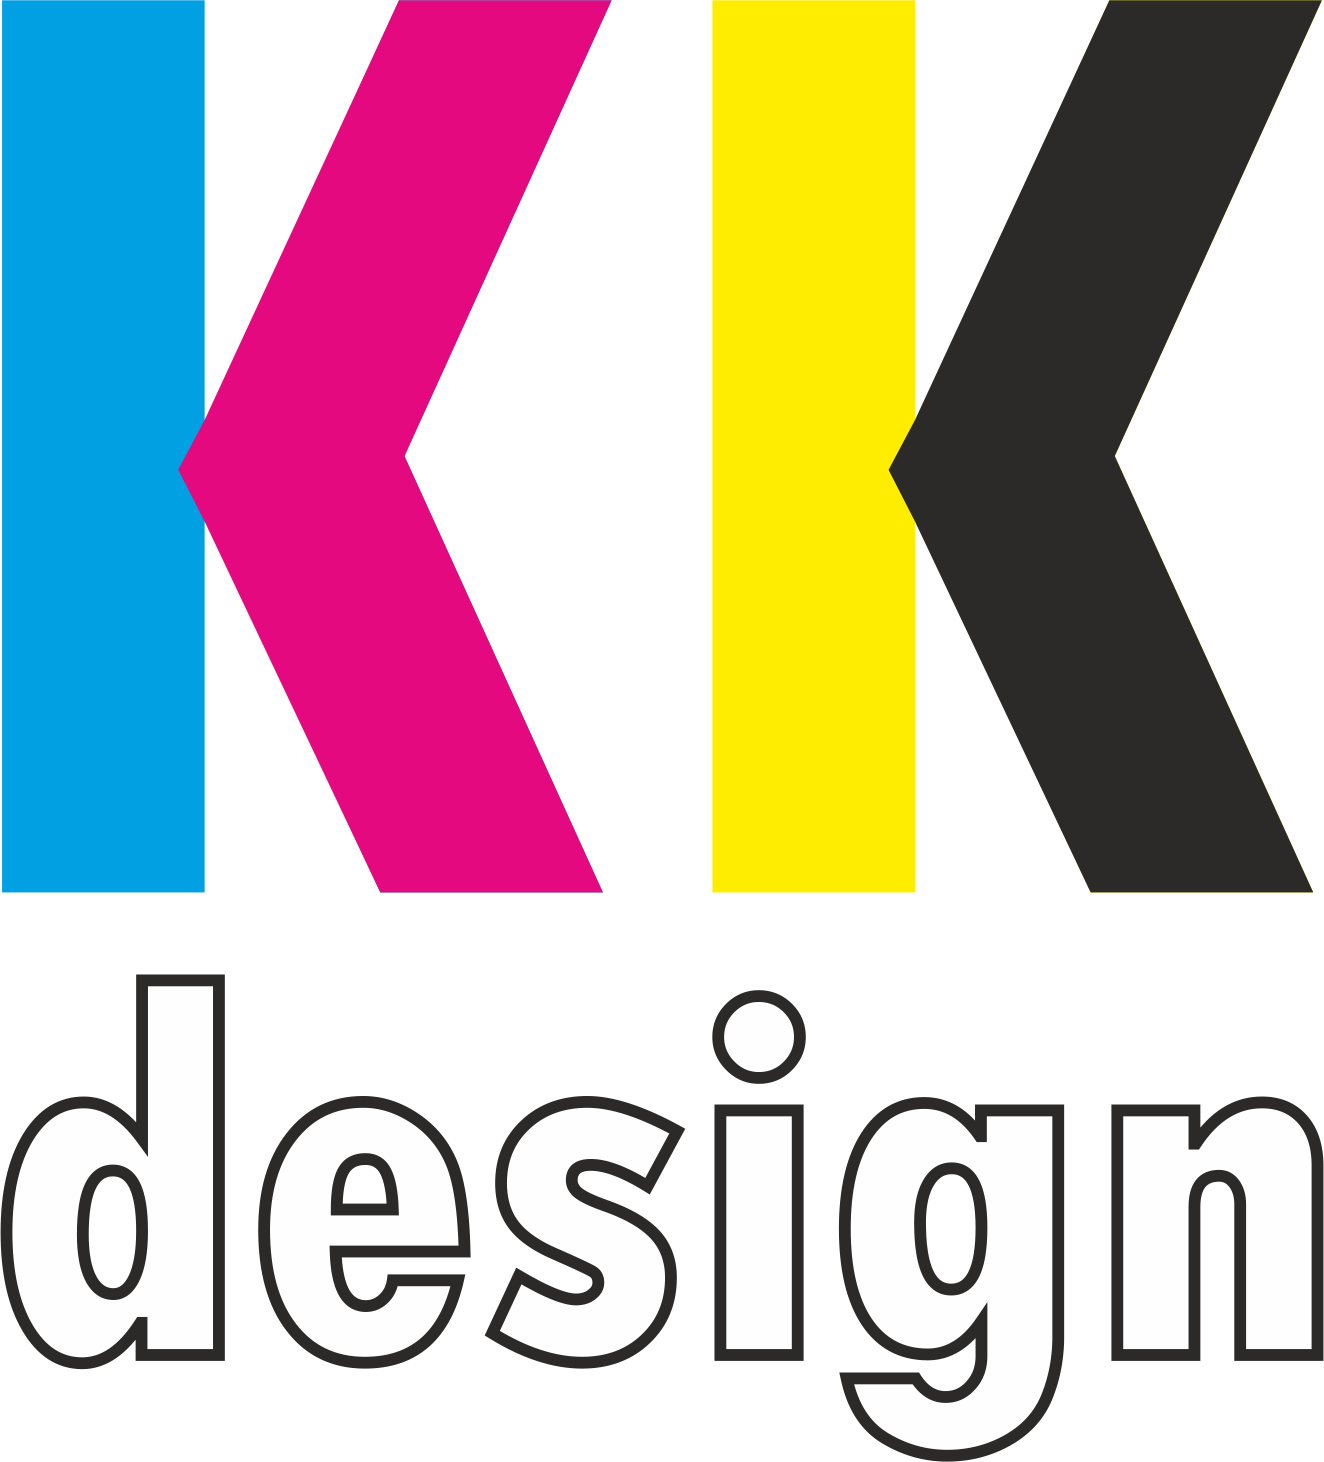 KK Design